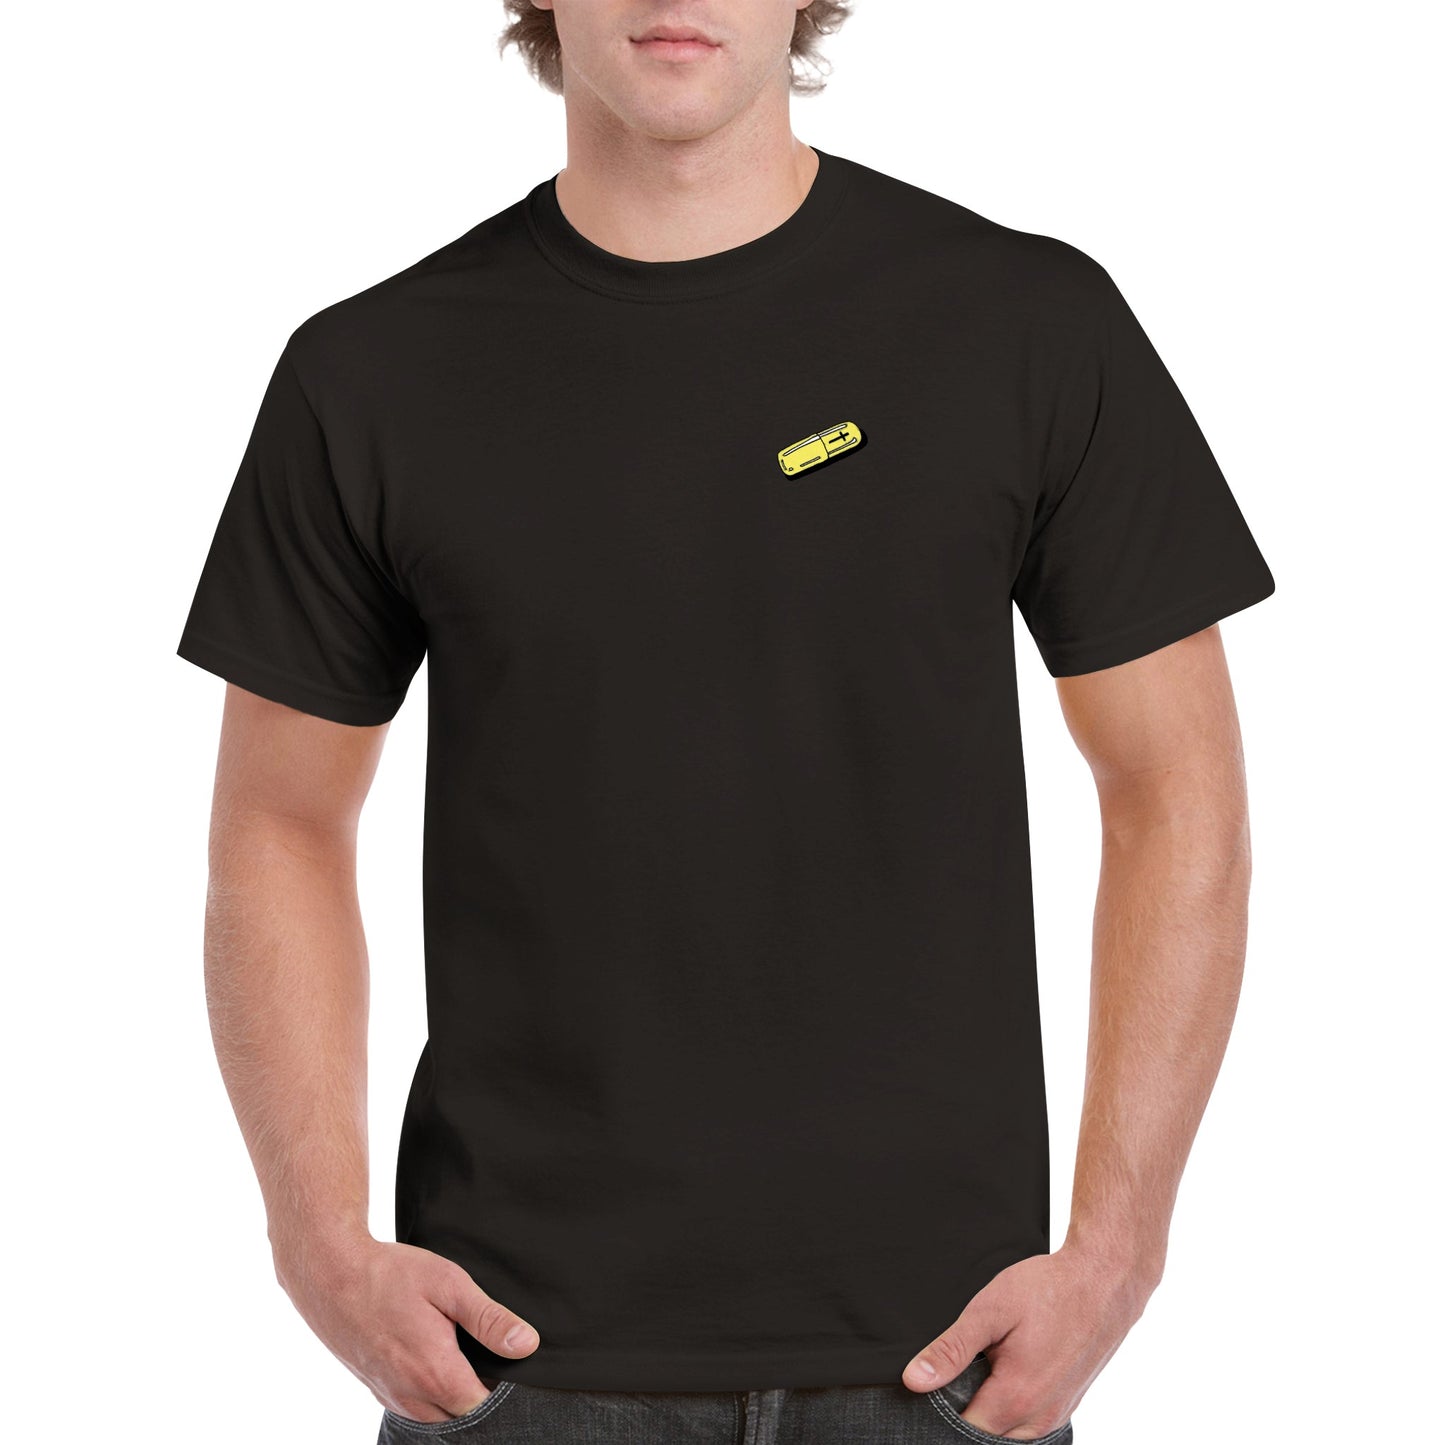 Pill - Unisex Adult T-shirt